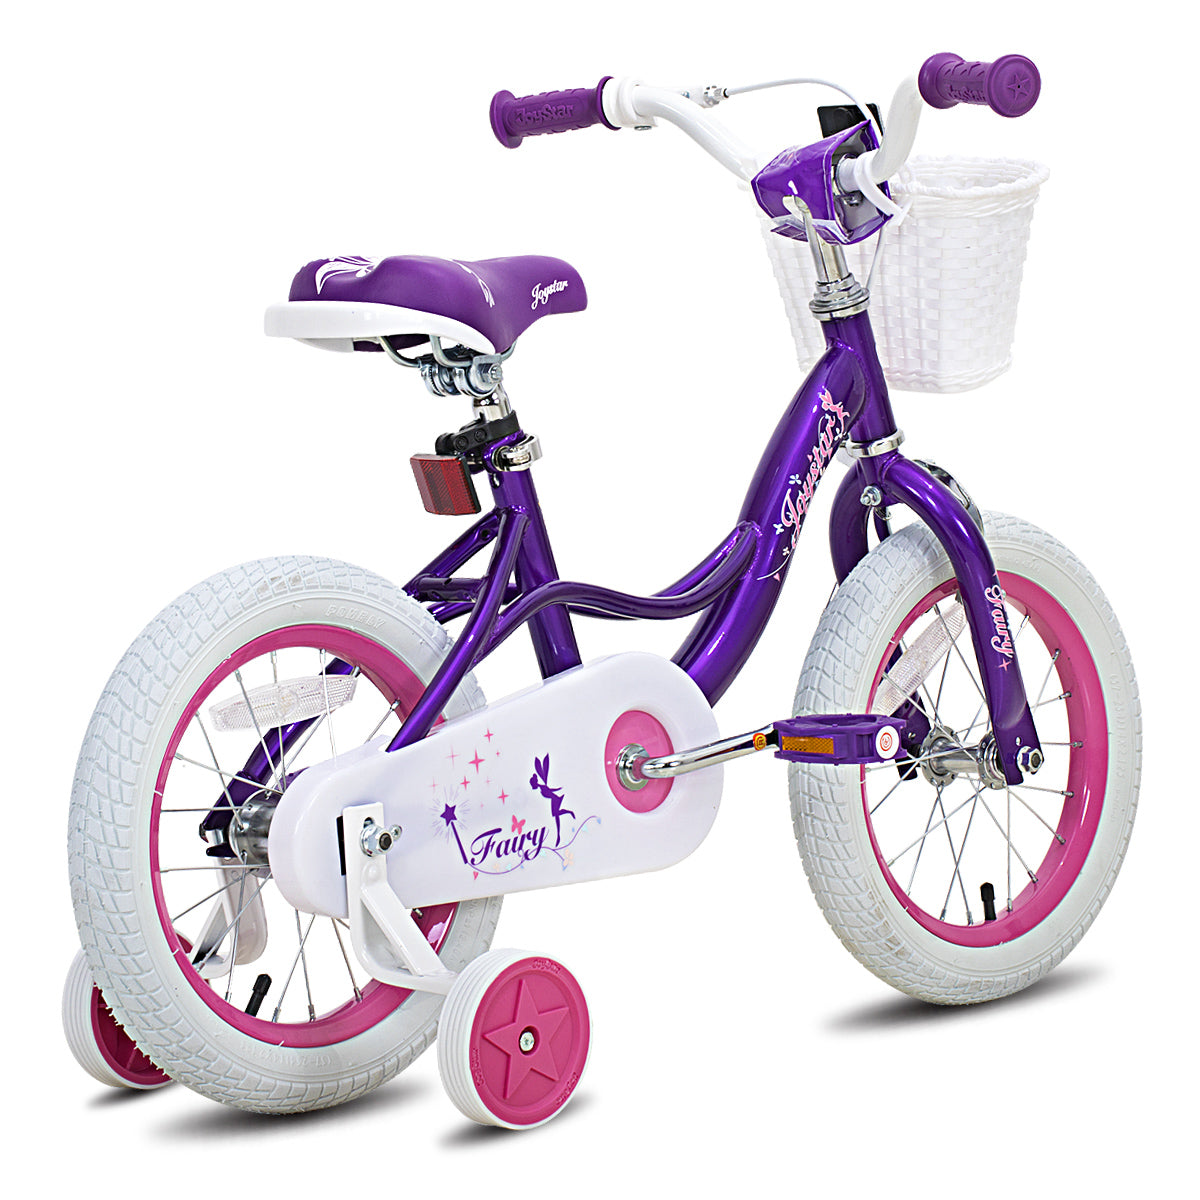 JOYSTAR Fairy Girls Bike for Toddlers & Kids CA